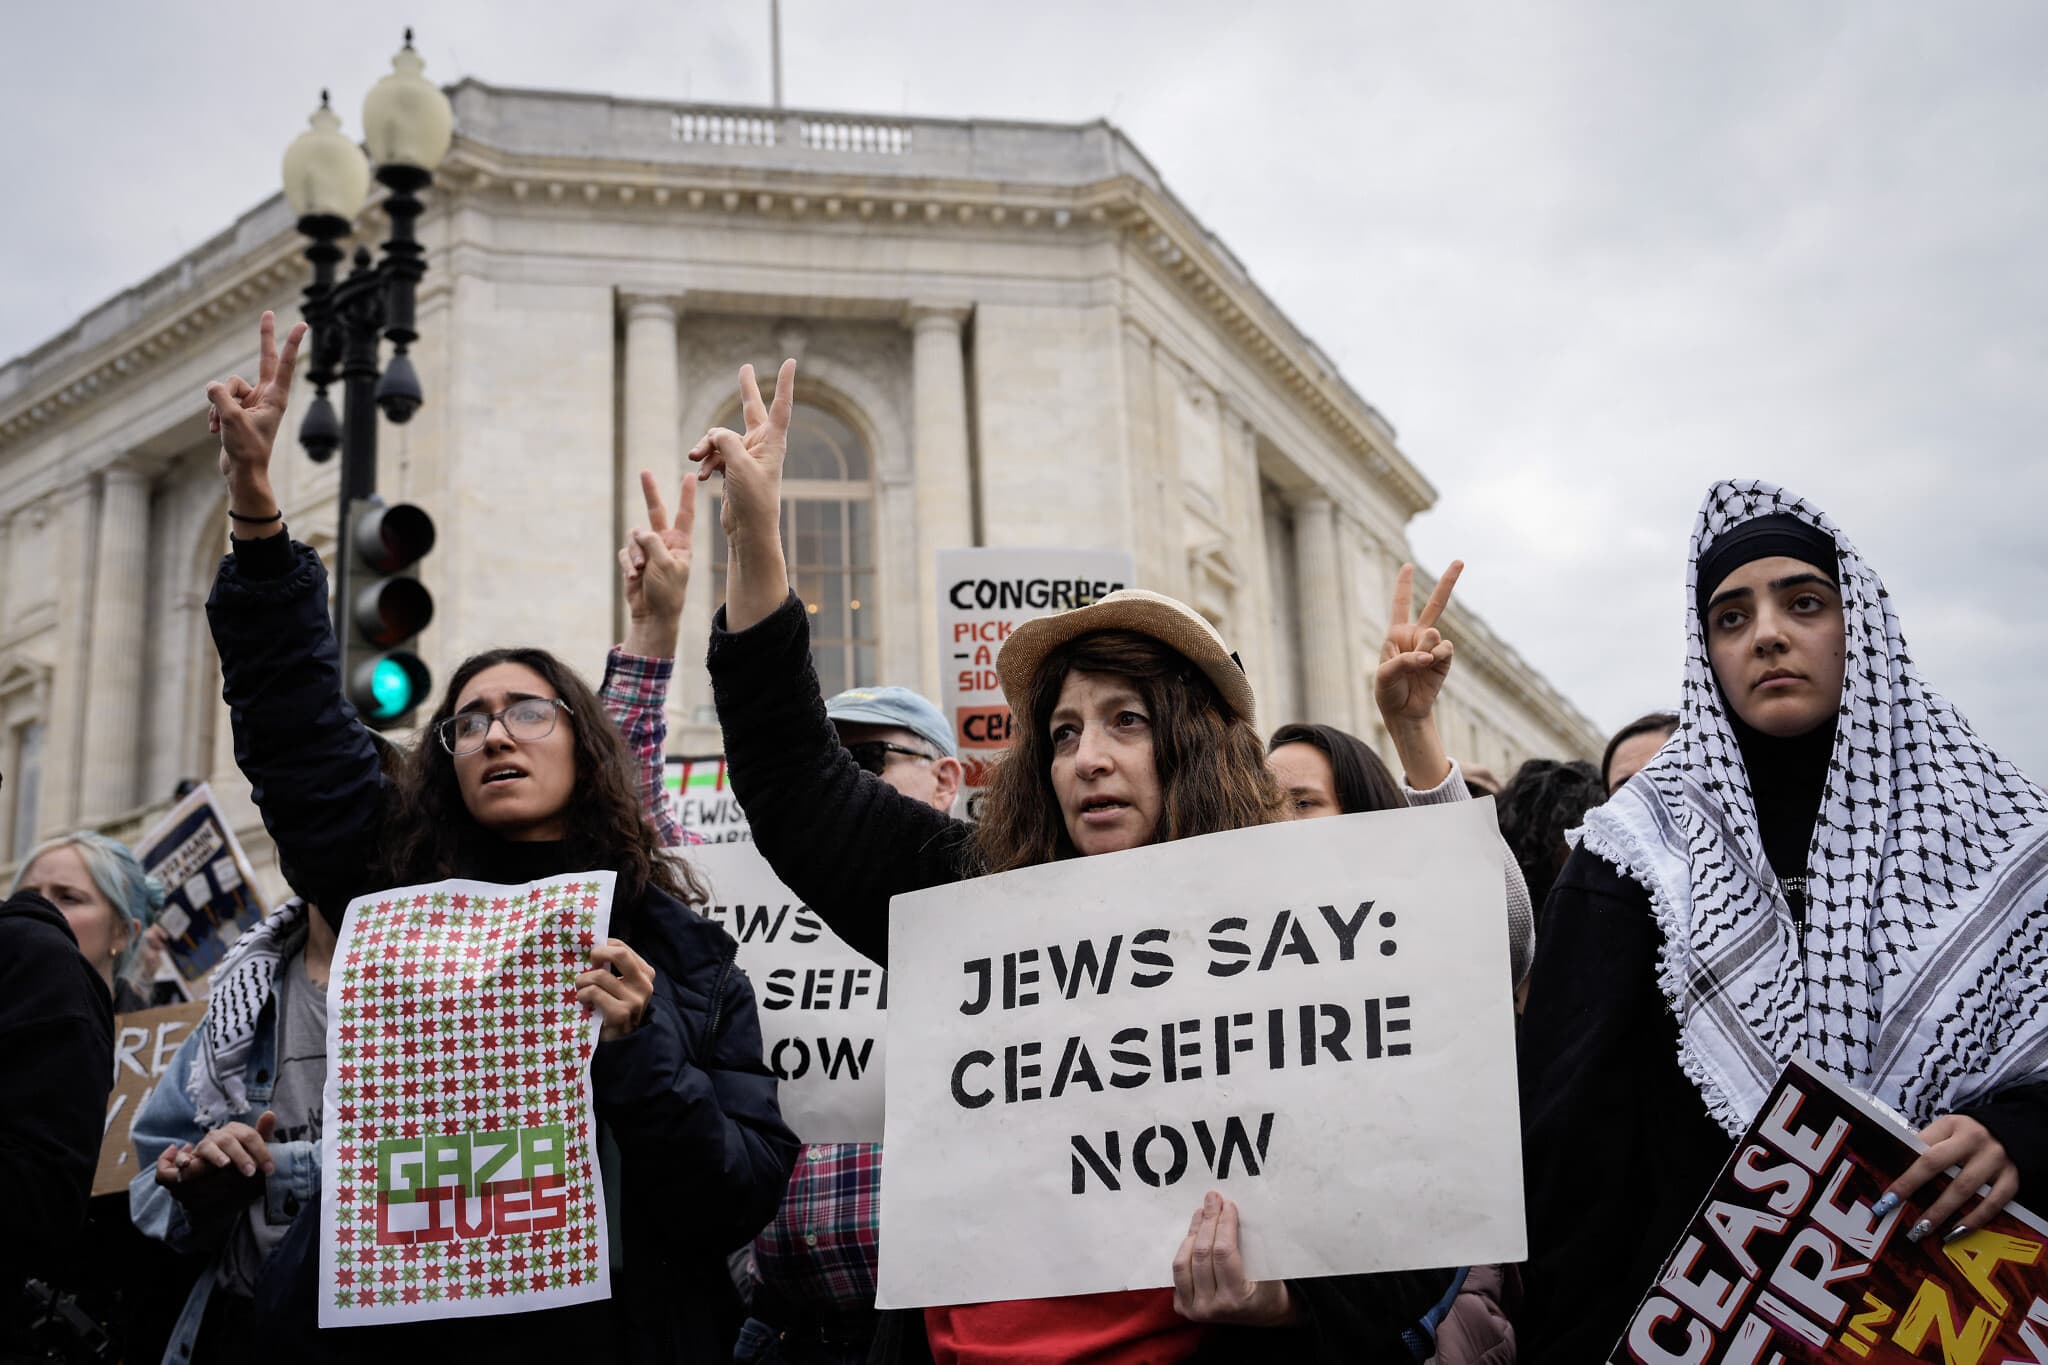 פעילים בארגונים פרו־פלסטיניים והאנטי־ישראליים מקיימים עצרת בדרישה להפסקת אש בעזה, וושינגטון הבירה, 18 באוקטובר 2023 (צילום: Drew Angerer / GETTY IMAGES NORTH AMERICA / Getty Images via AFP)